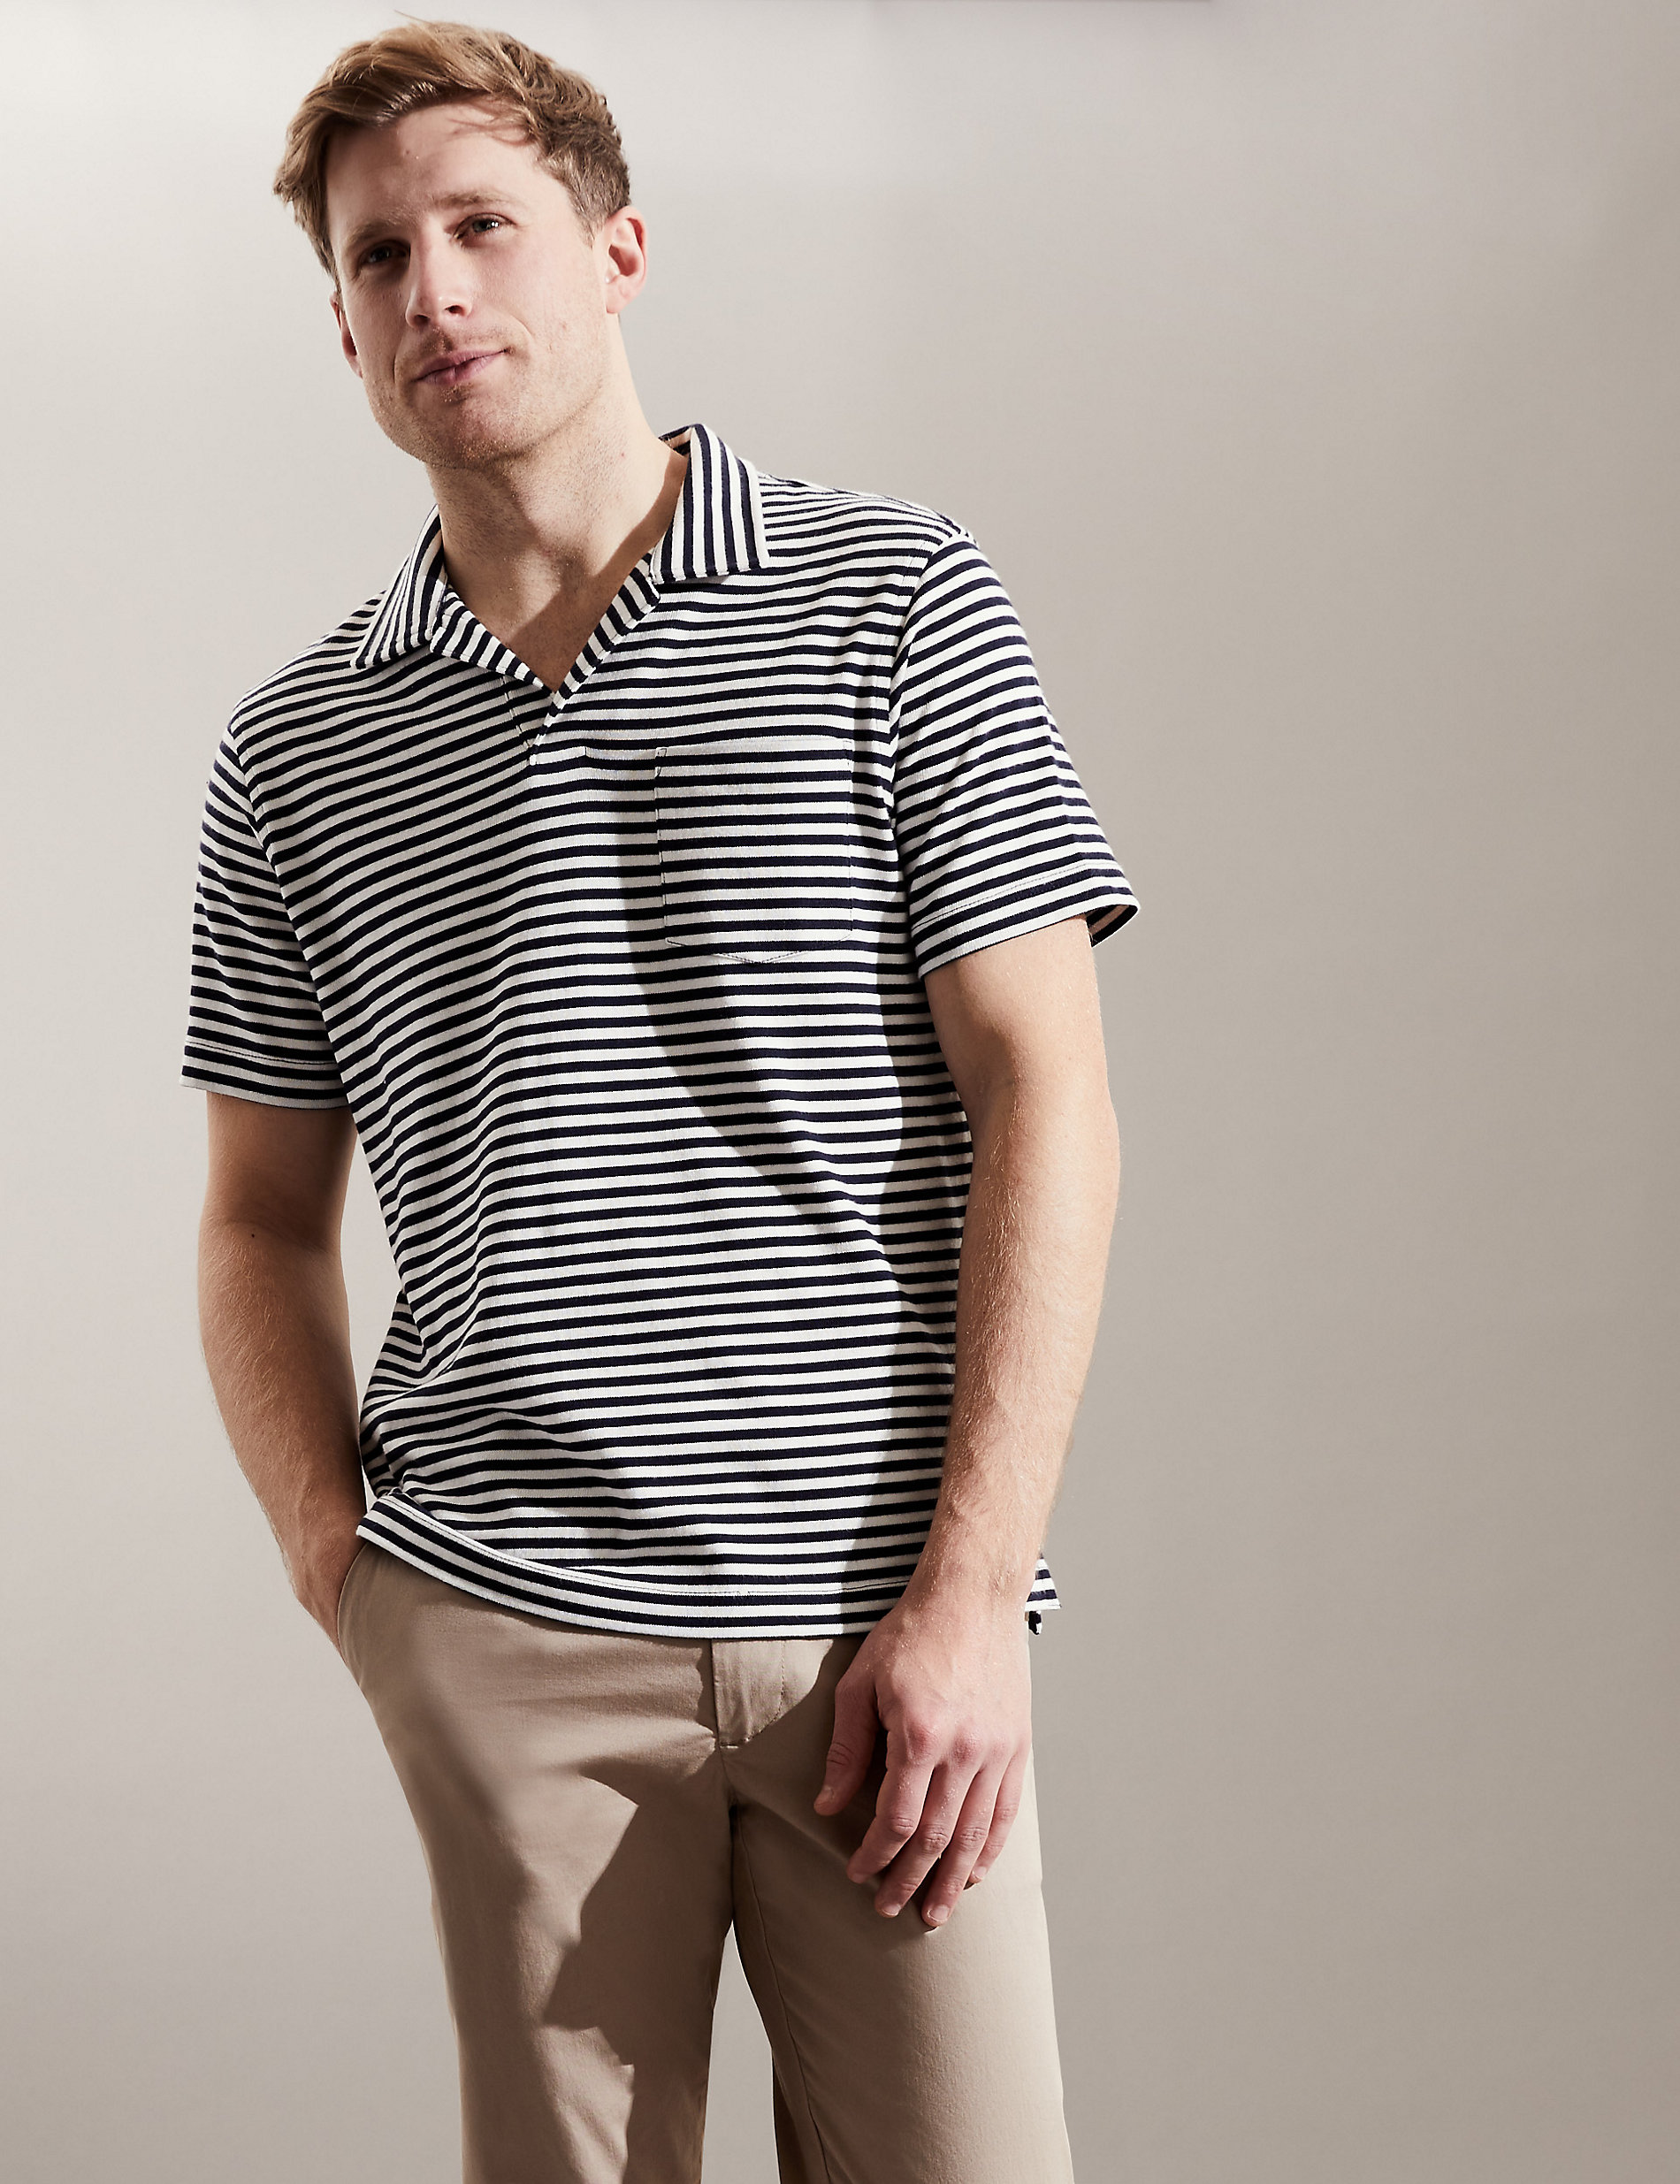 Pure Cotton Striped Polo Shirt